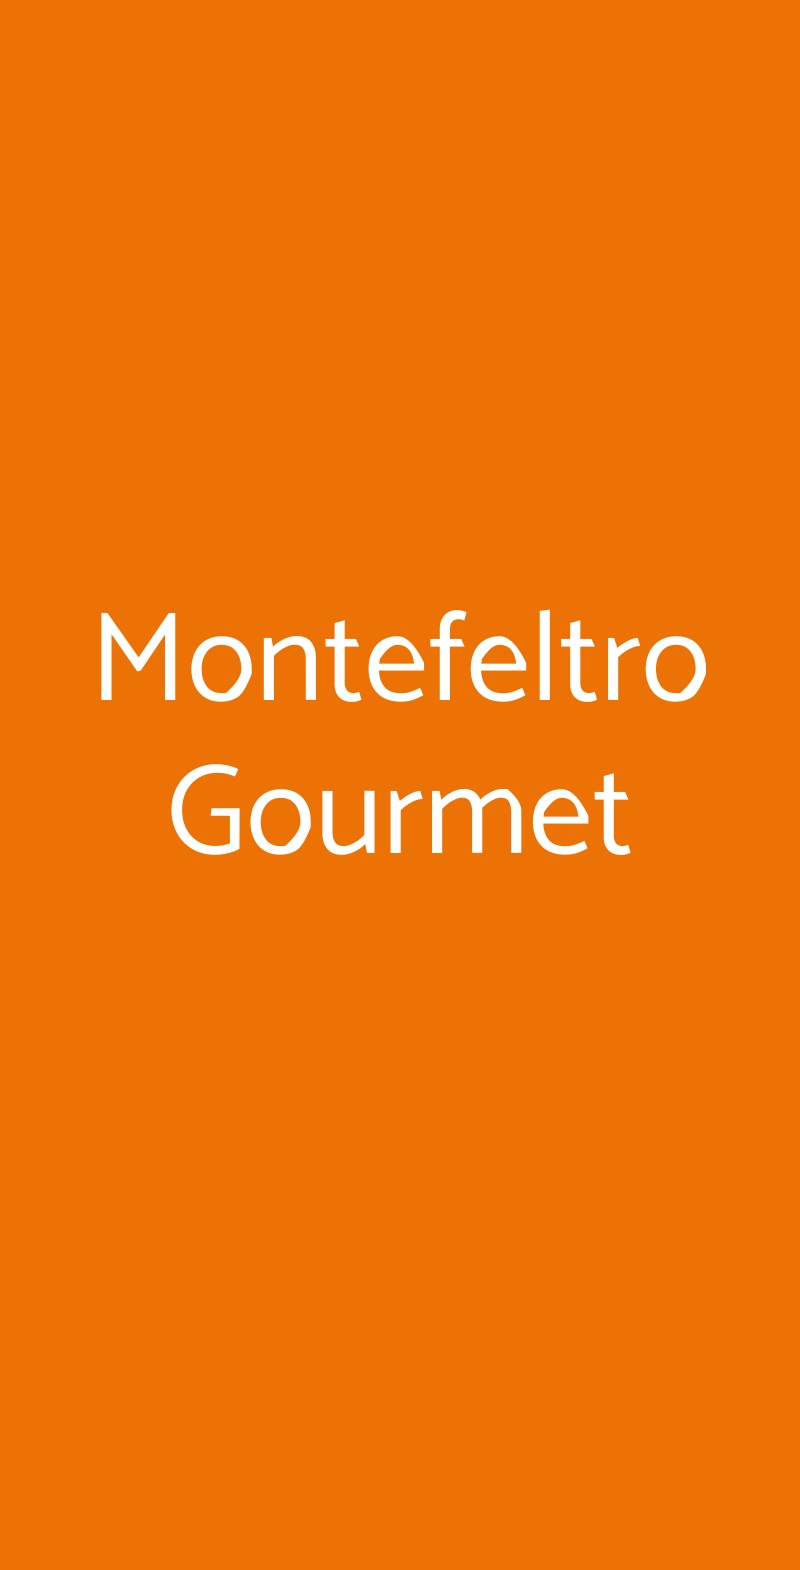 Montefeltro Gourmet Roma menù 1 pagina